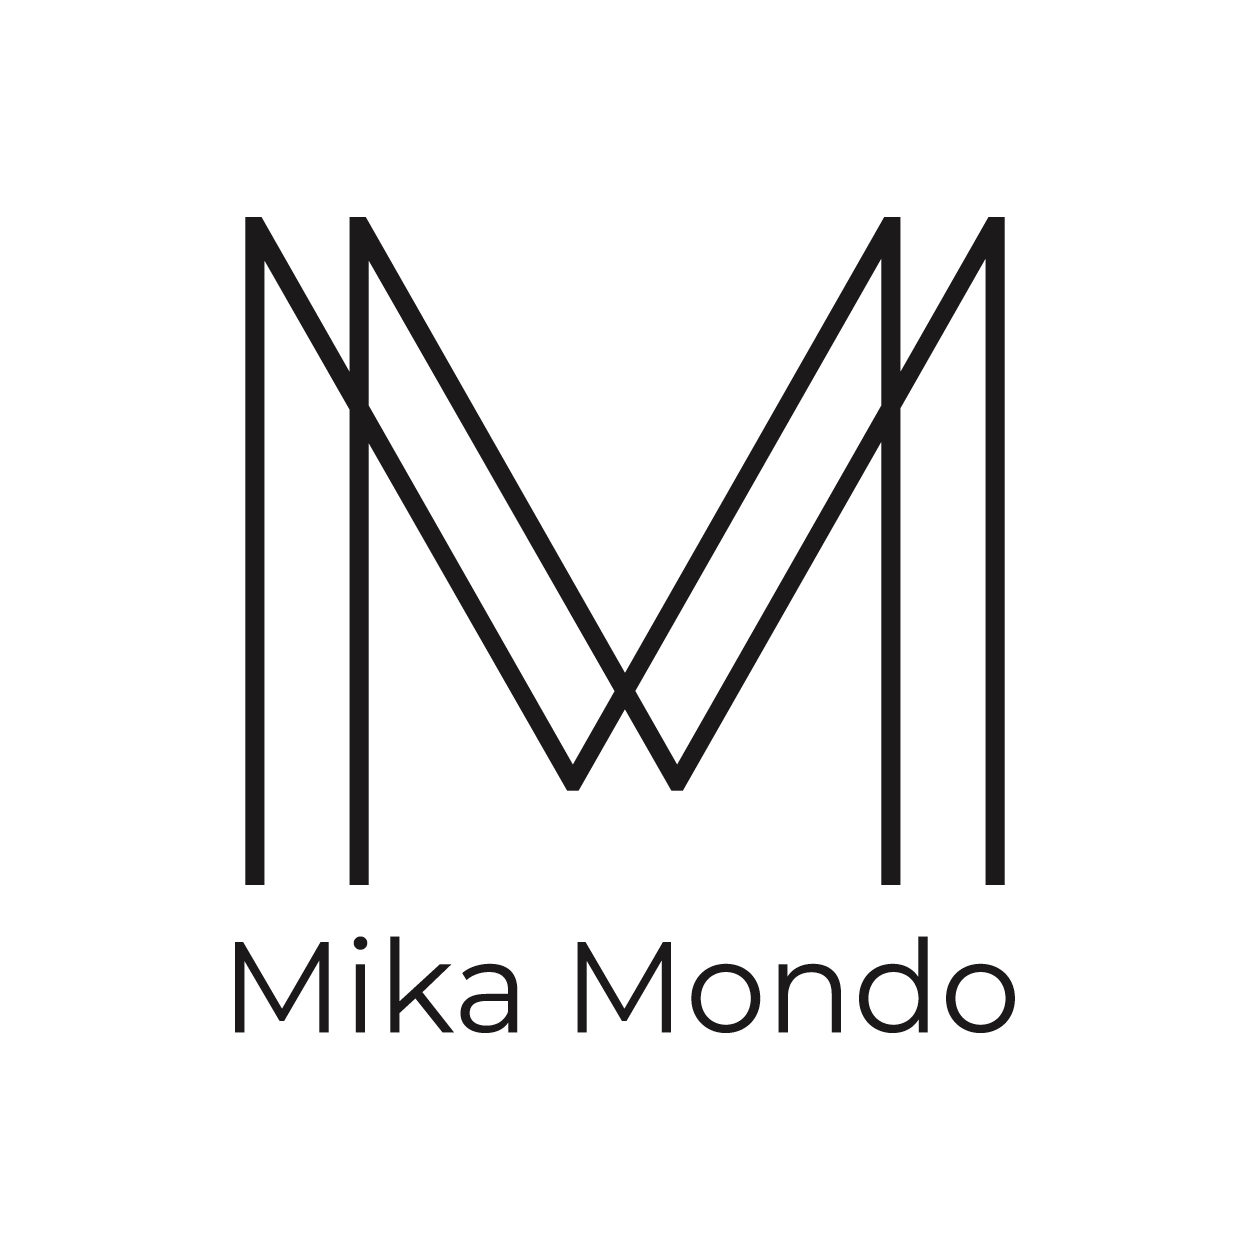 Mika-Mondo_101322_LinkedIn-Profil_Logo_white